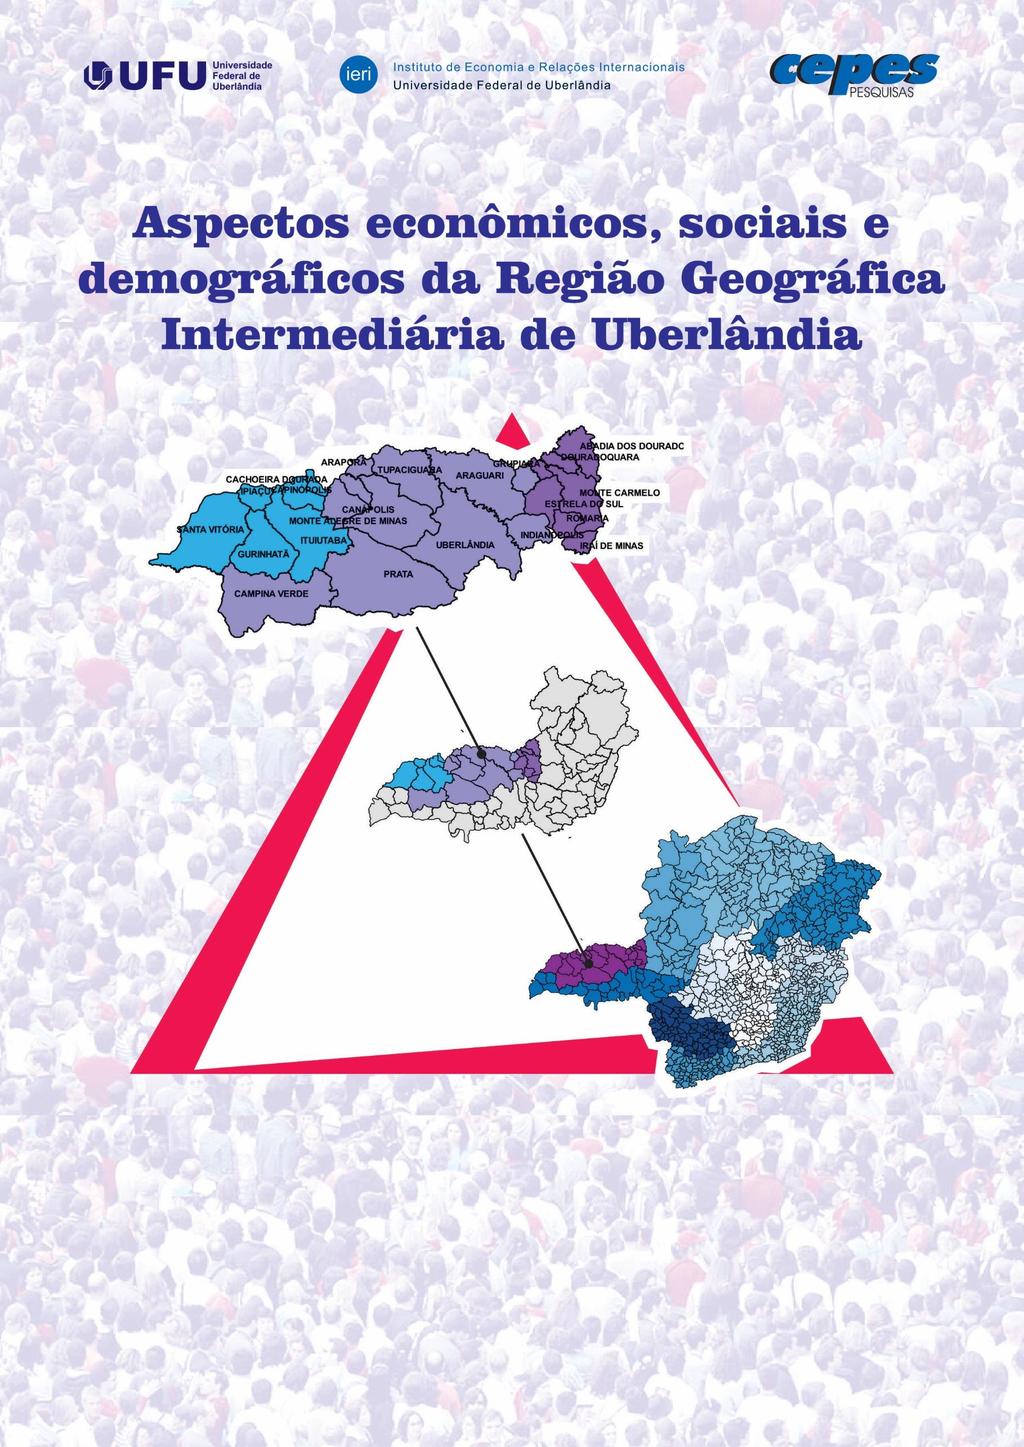 Volume 1 Dinâmica demográfica e a recente divisão regional no Brasil: as Regiões Geográficas